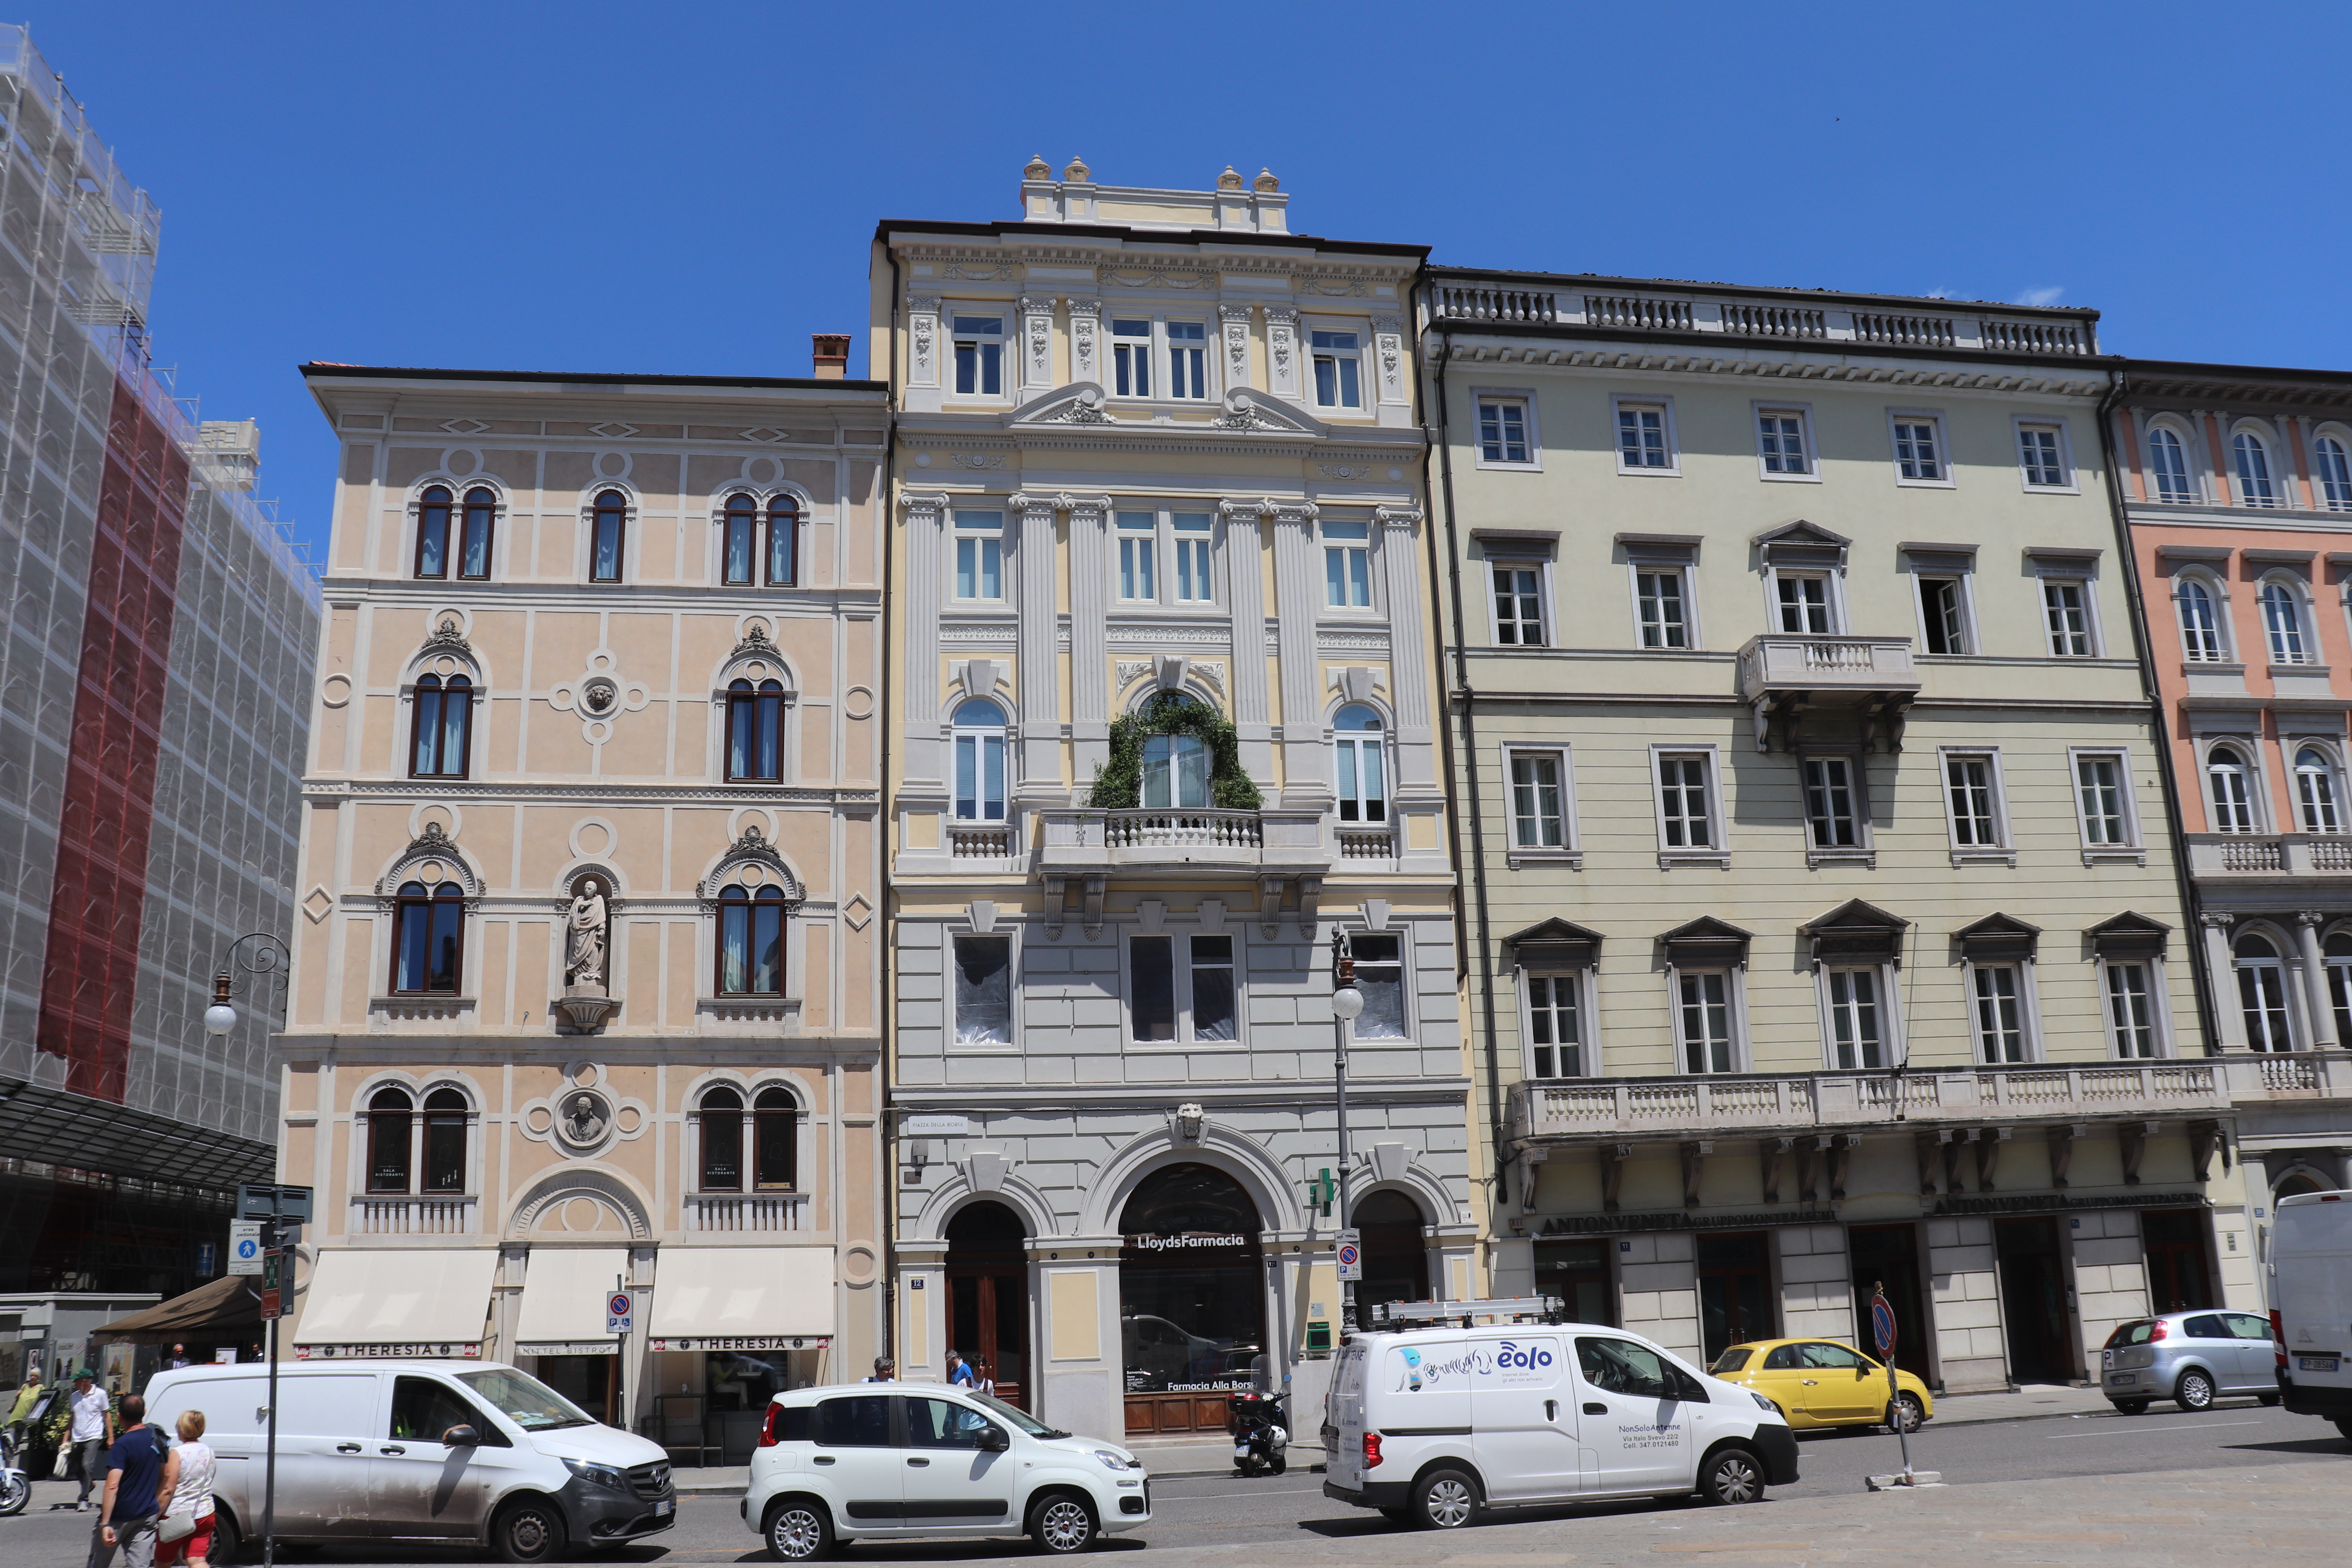 File:Trieste kamienica Piazza della Borsa 11 12 13.jpg - Wikimedia Commons